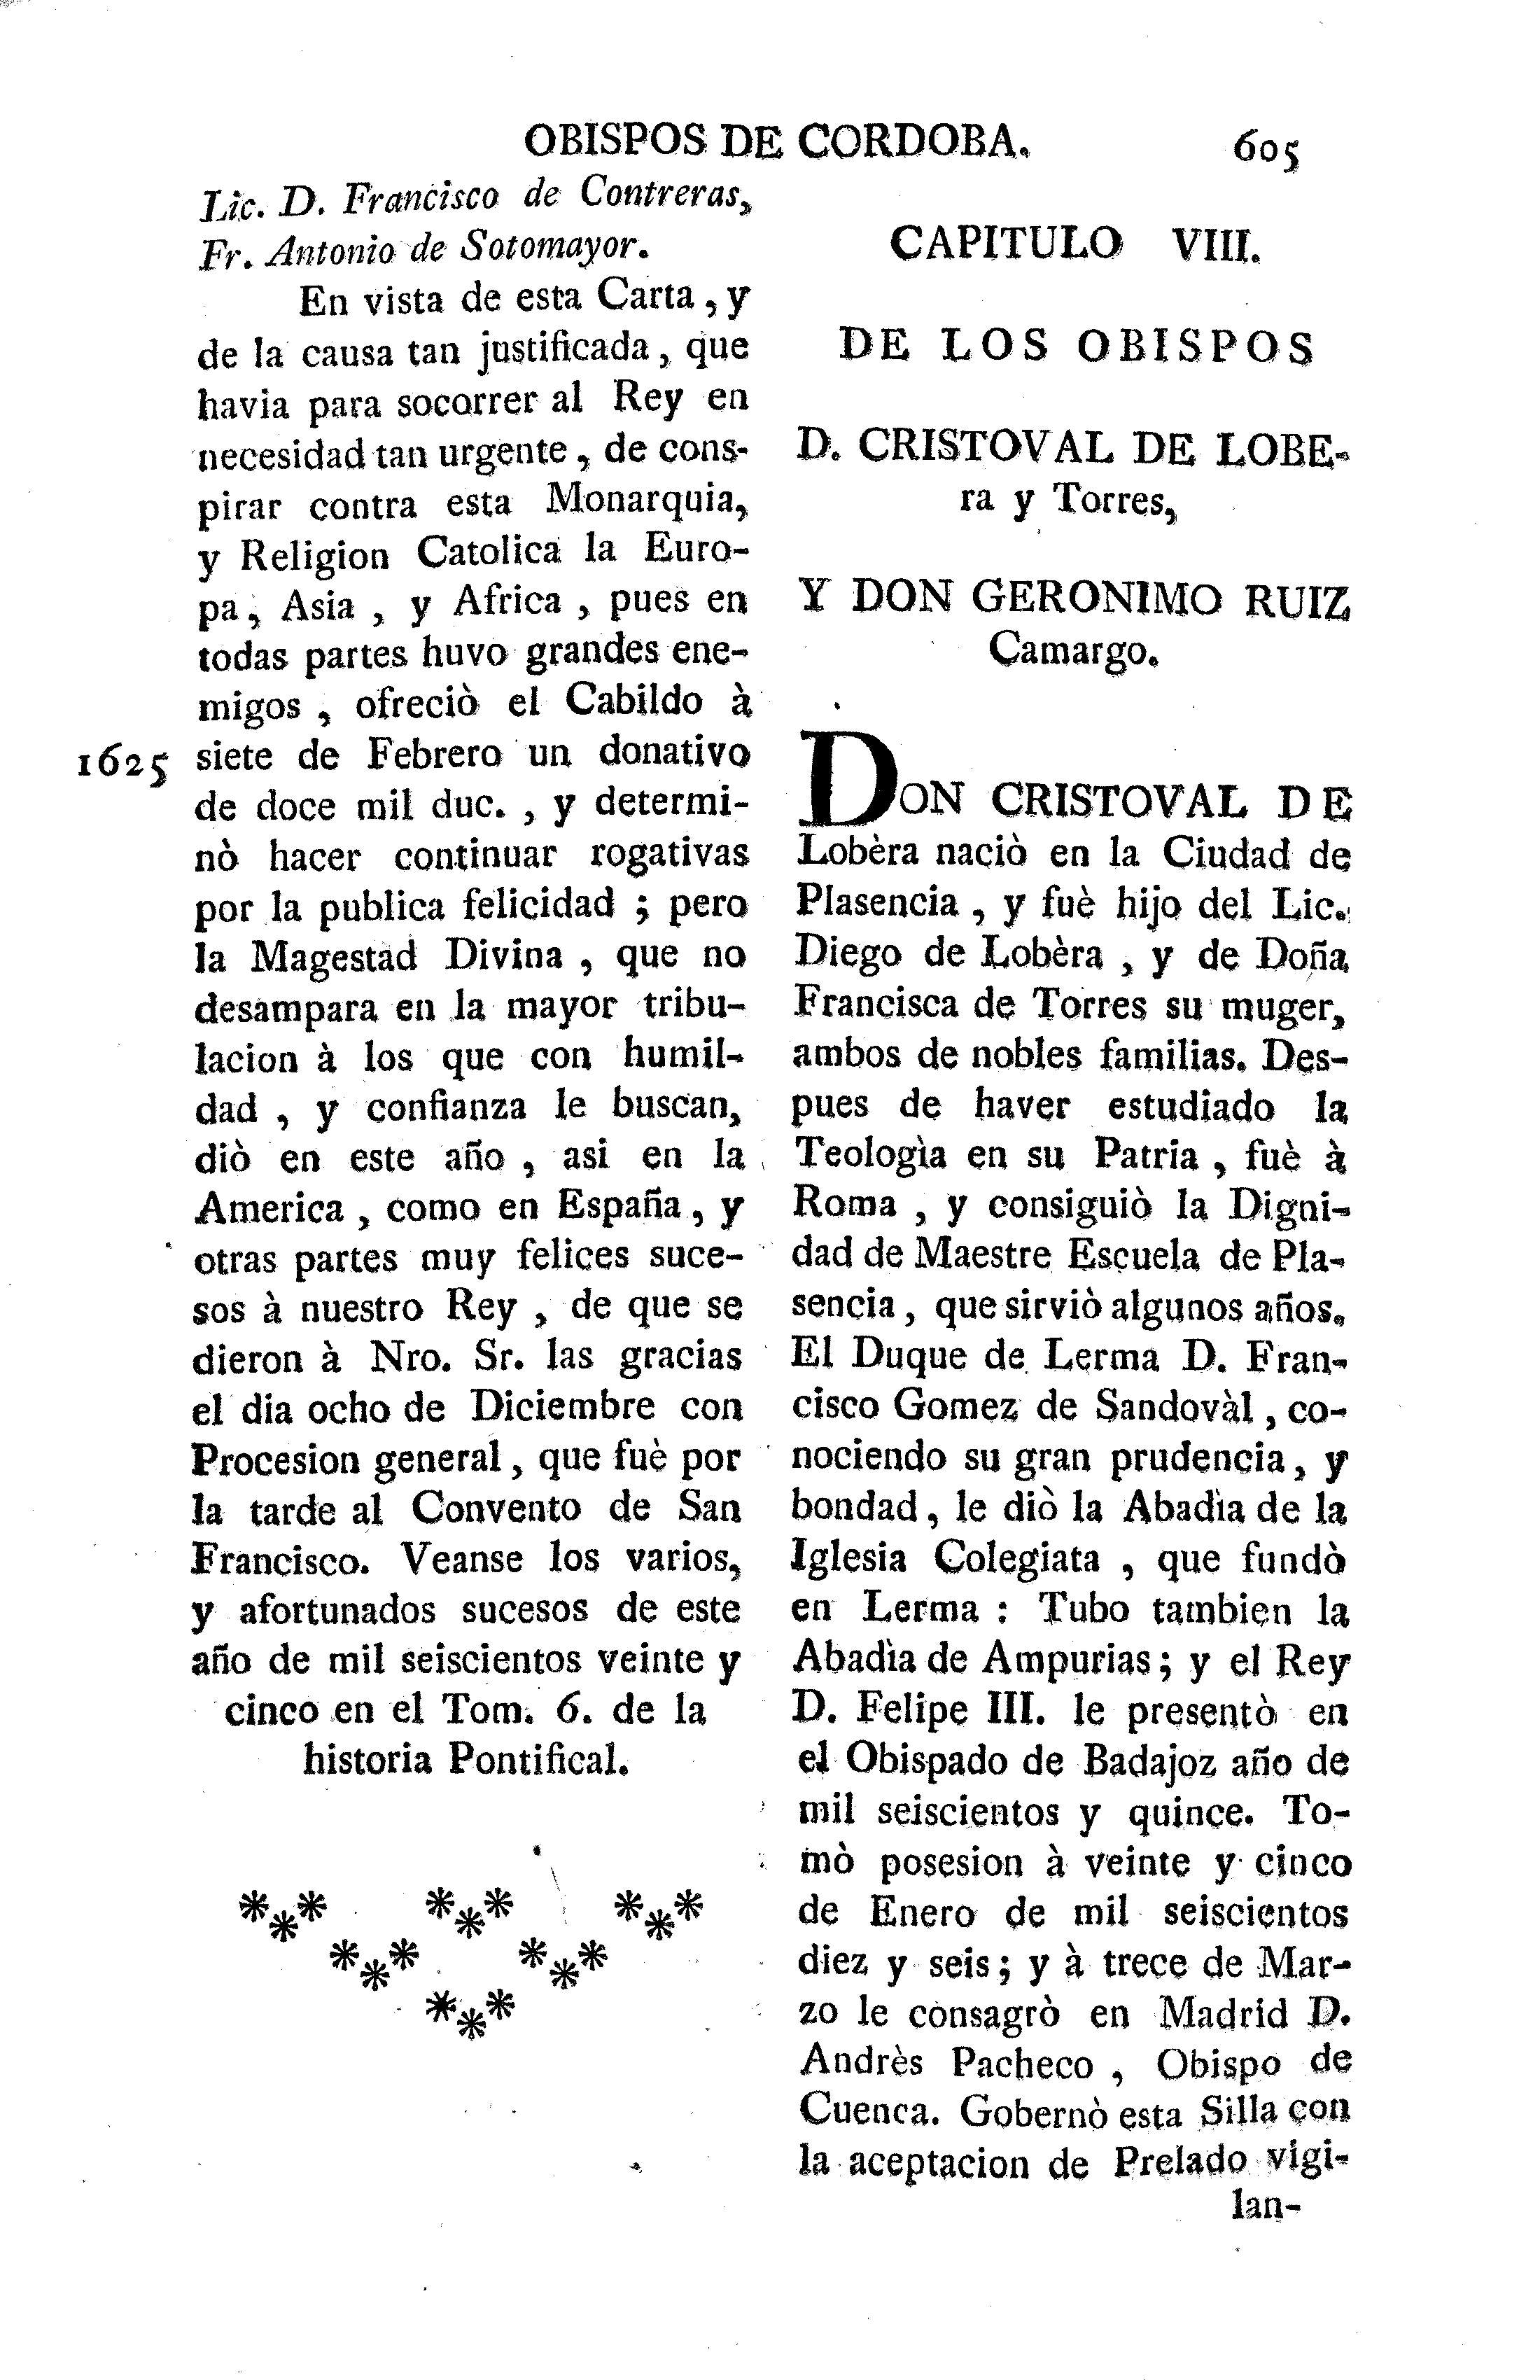 Capitulo VIII. De los obispos D. Cristoval de Lobera y Torres, y Don Geronimo Ruiz Camargo